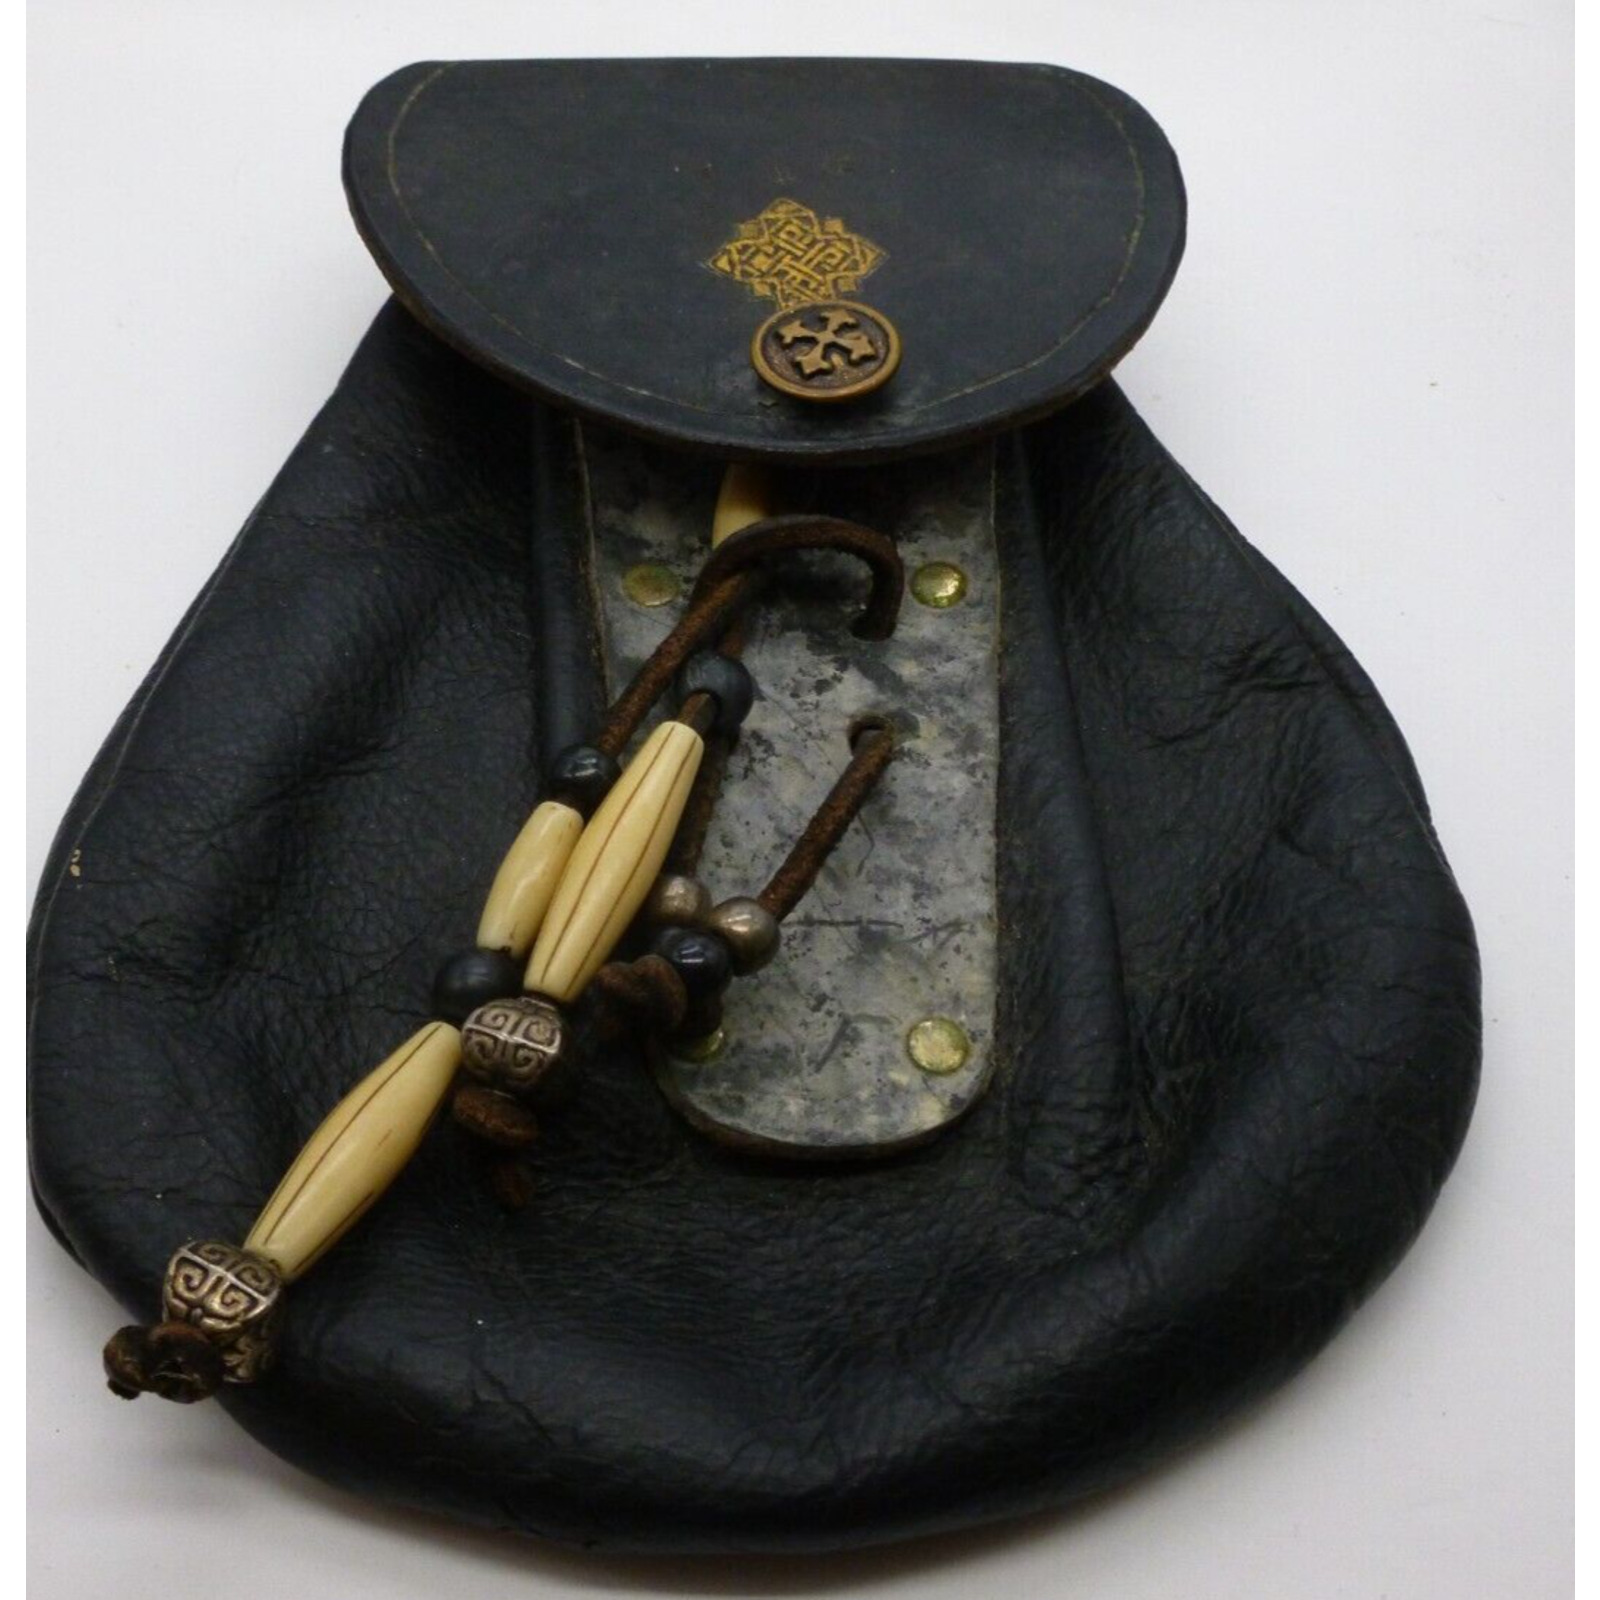 Antique Civil War Era Ammunition Bag Leather Bullets Holder Ball Bag Celtic?